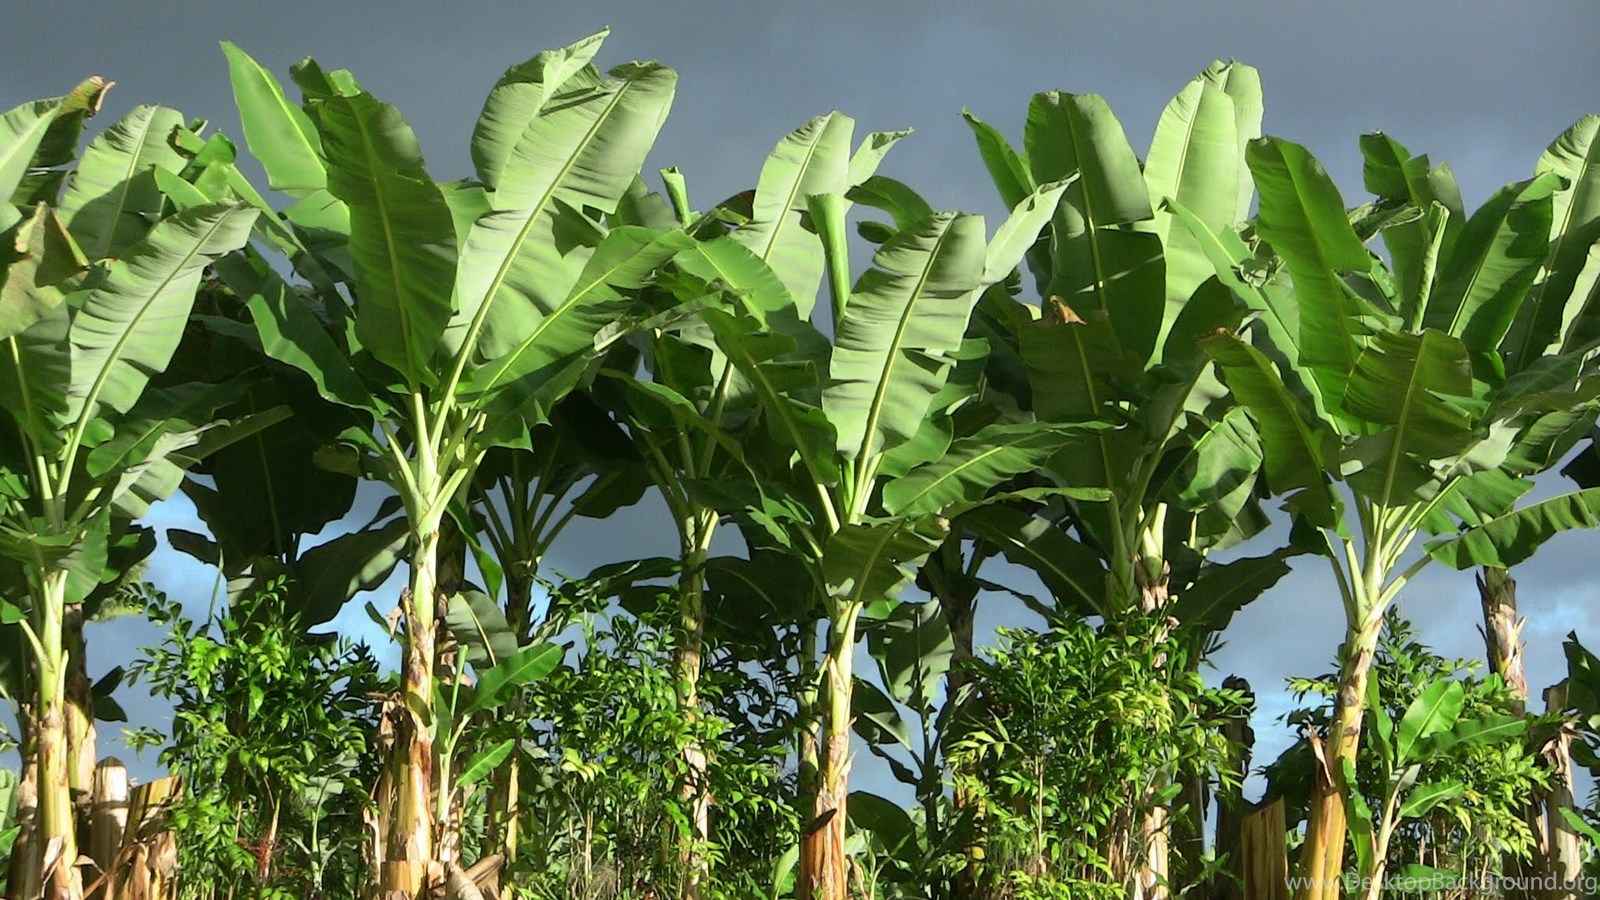 Banana / Plantain